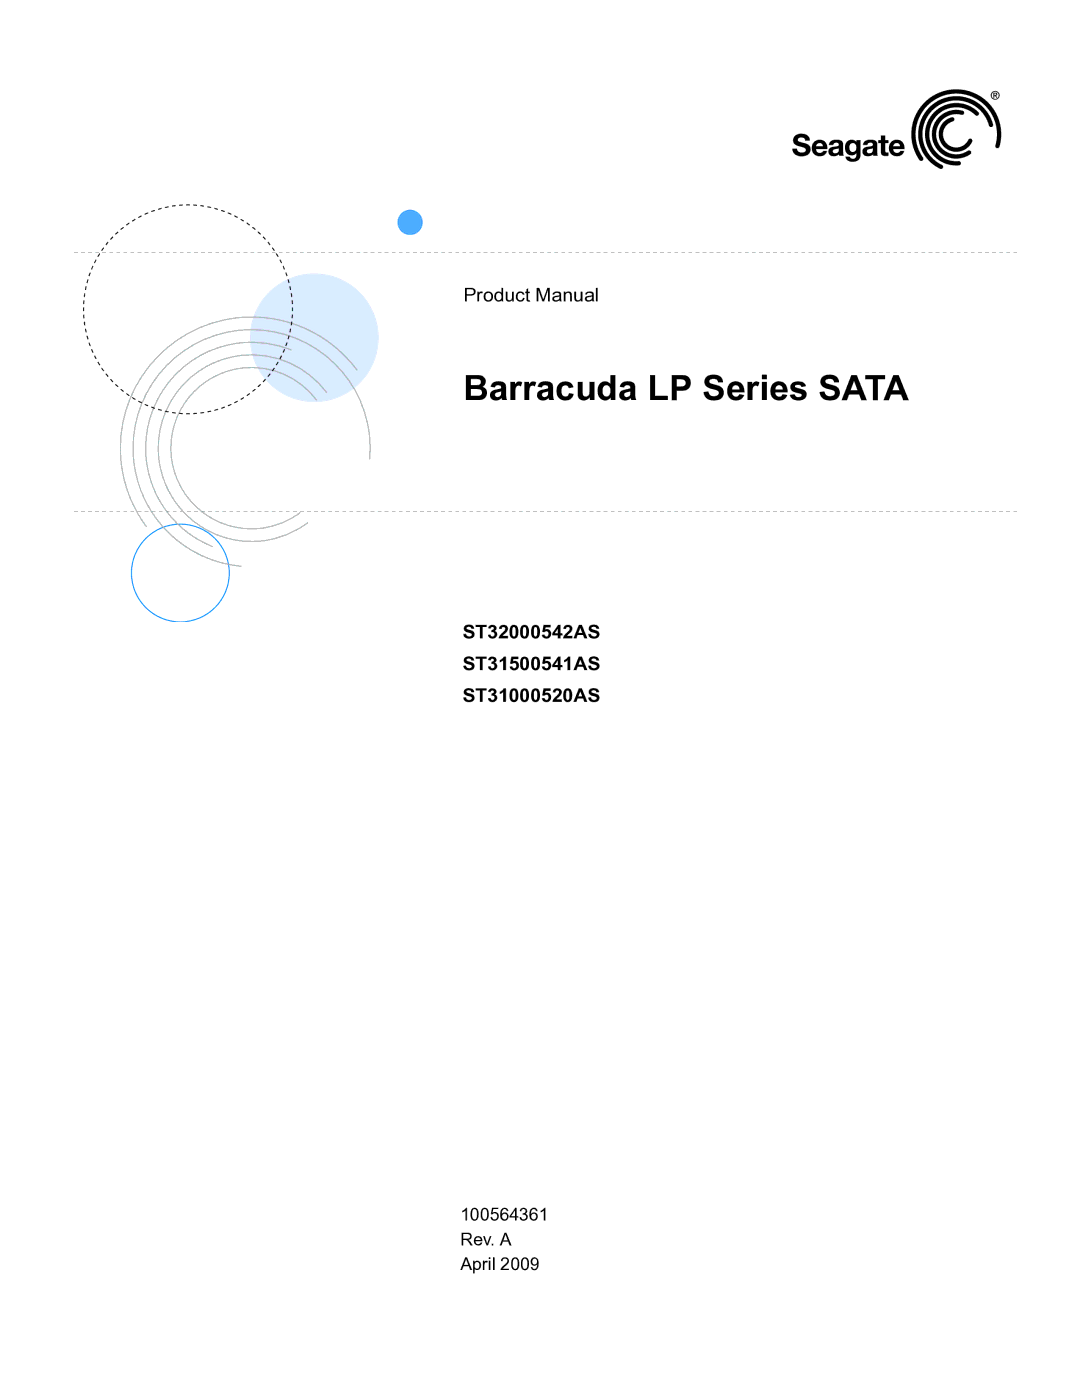 Seagate manual Barracuda LP Series Sata, ST32000542AS ST31500541AS ST31000520AS 